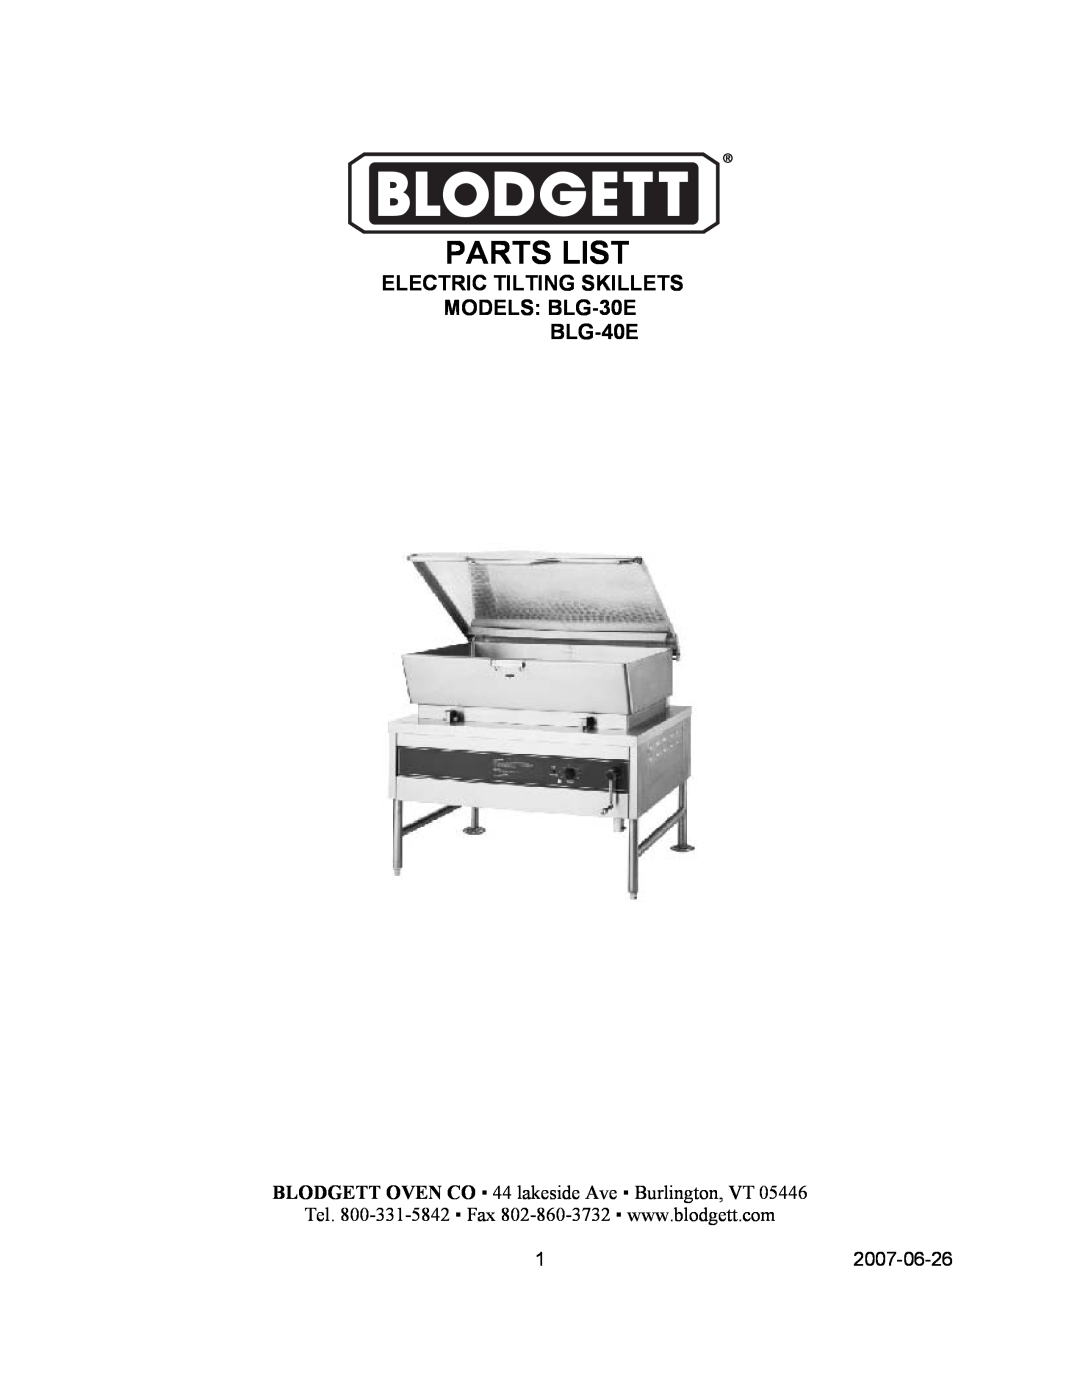 Blodgett manual Parts List, ELECTRIC TILTING SKILLETS MODELS BLG-30E BLG-40E 